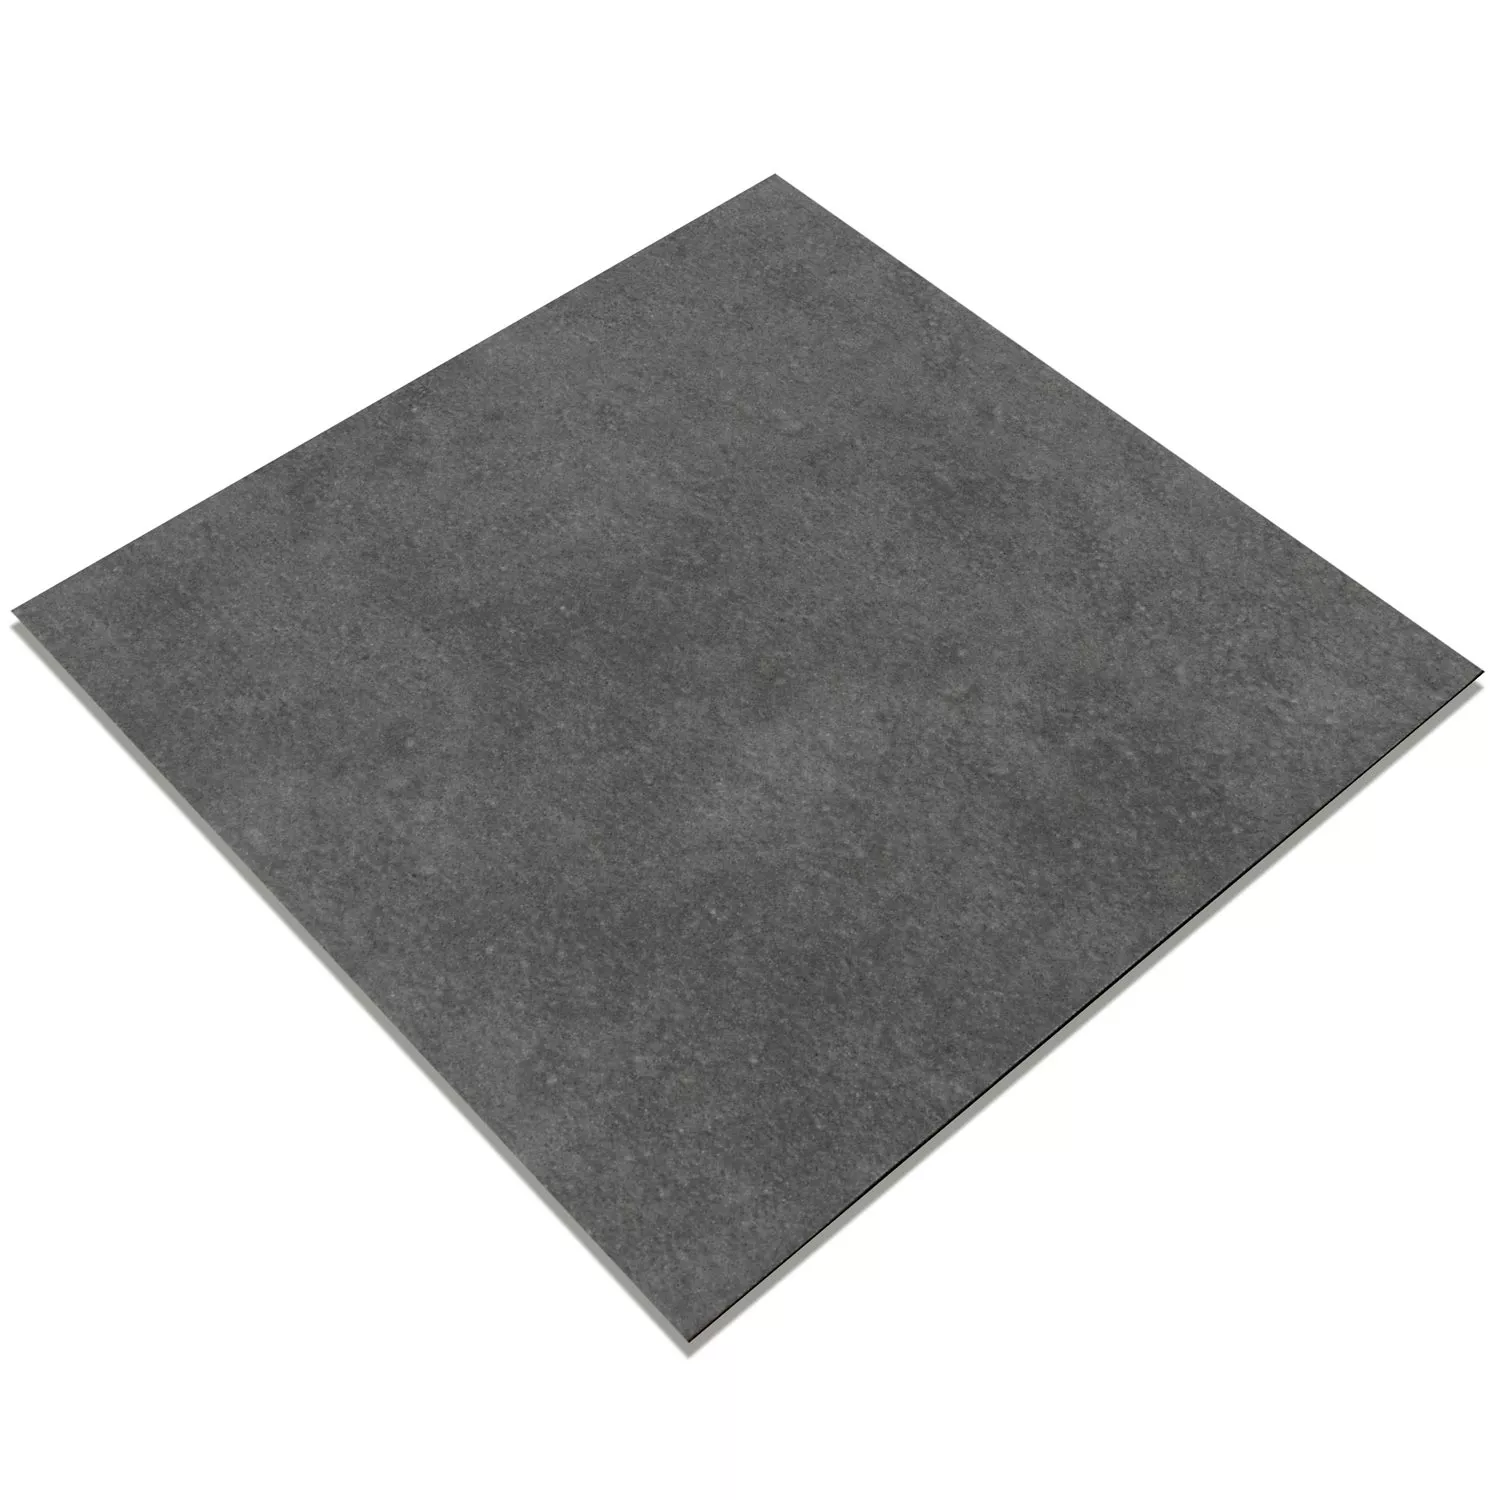 Cementfliser Optik Gotik Frundlæggendeflise Morkgra 22,3x22,3cm